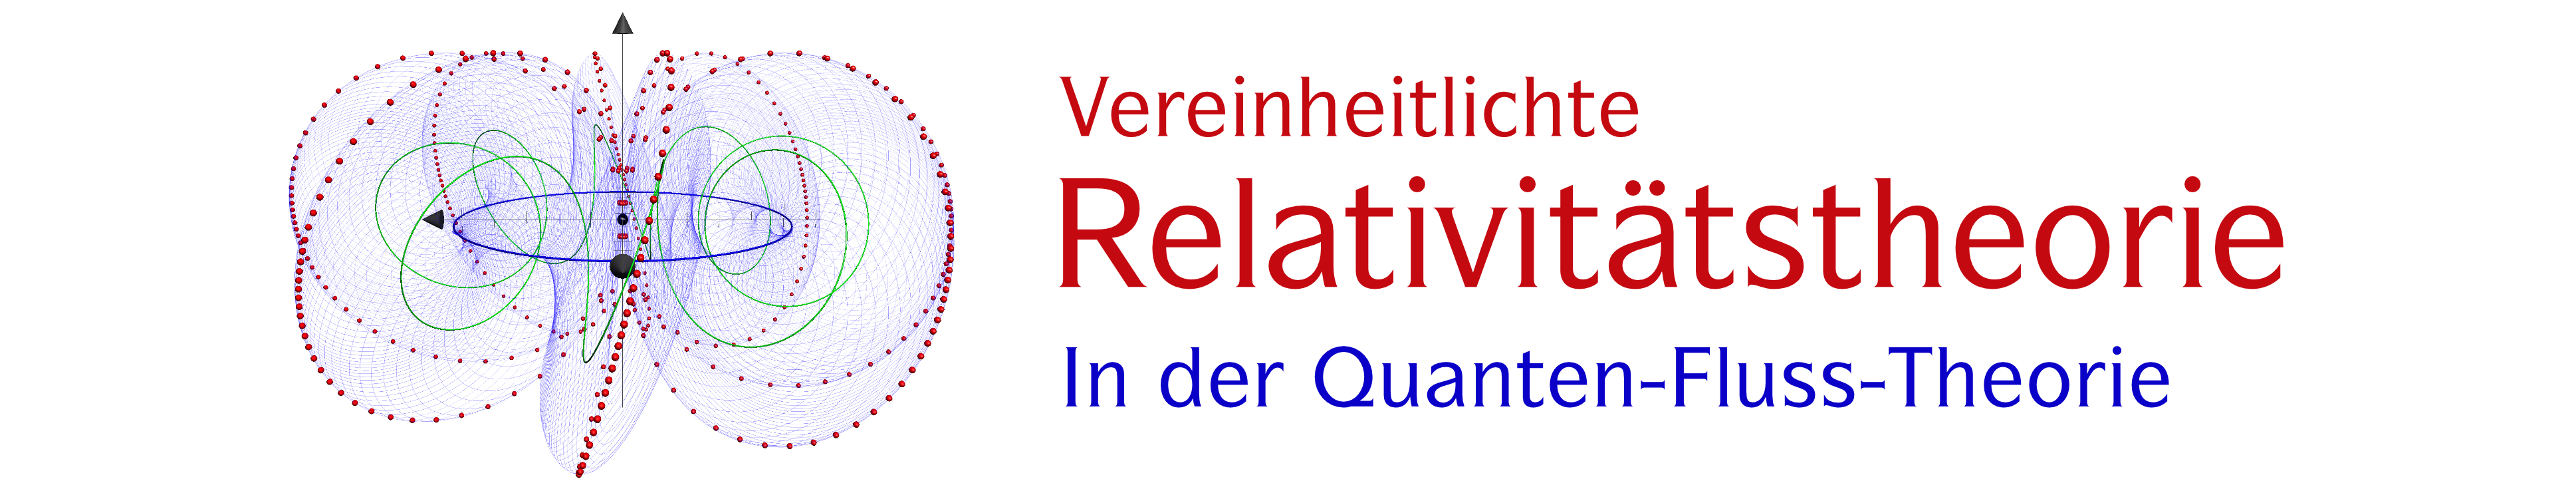 Vereinheitlichte Relativitätstheorie, in der Quanten-Fluss-Theorie